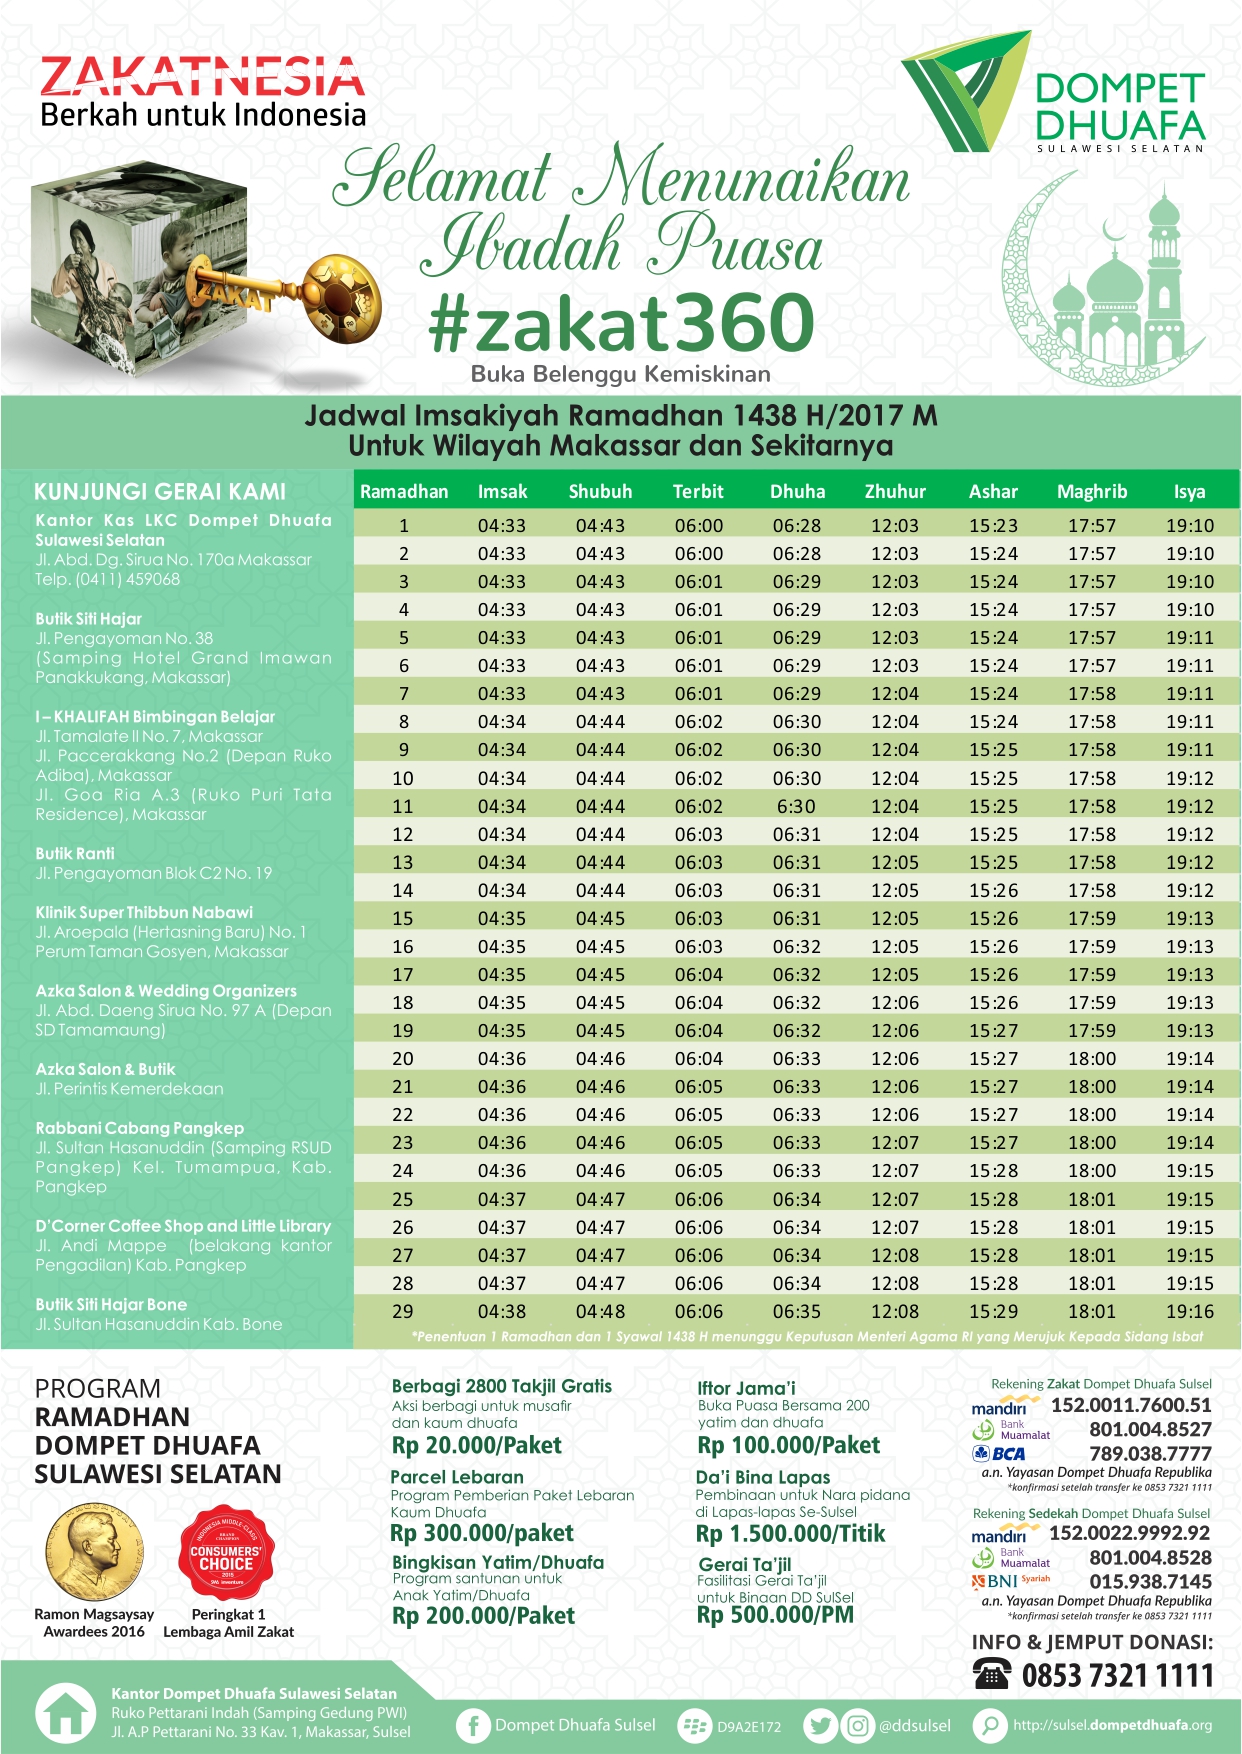 Jadwal Imsakiyah Ramadhan 1438 H/2017 M untuk Wilayah Makassar